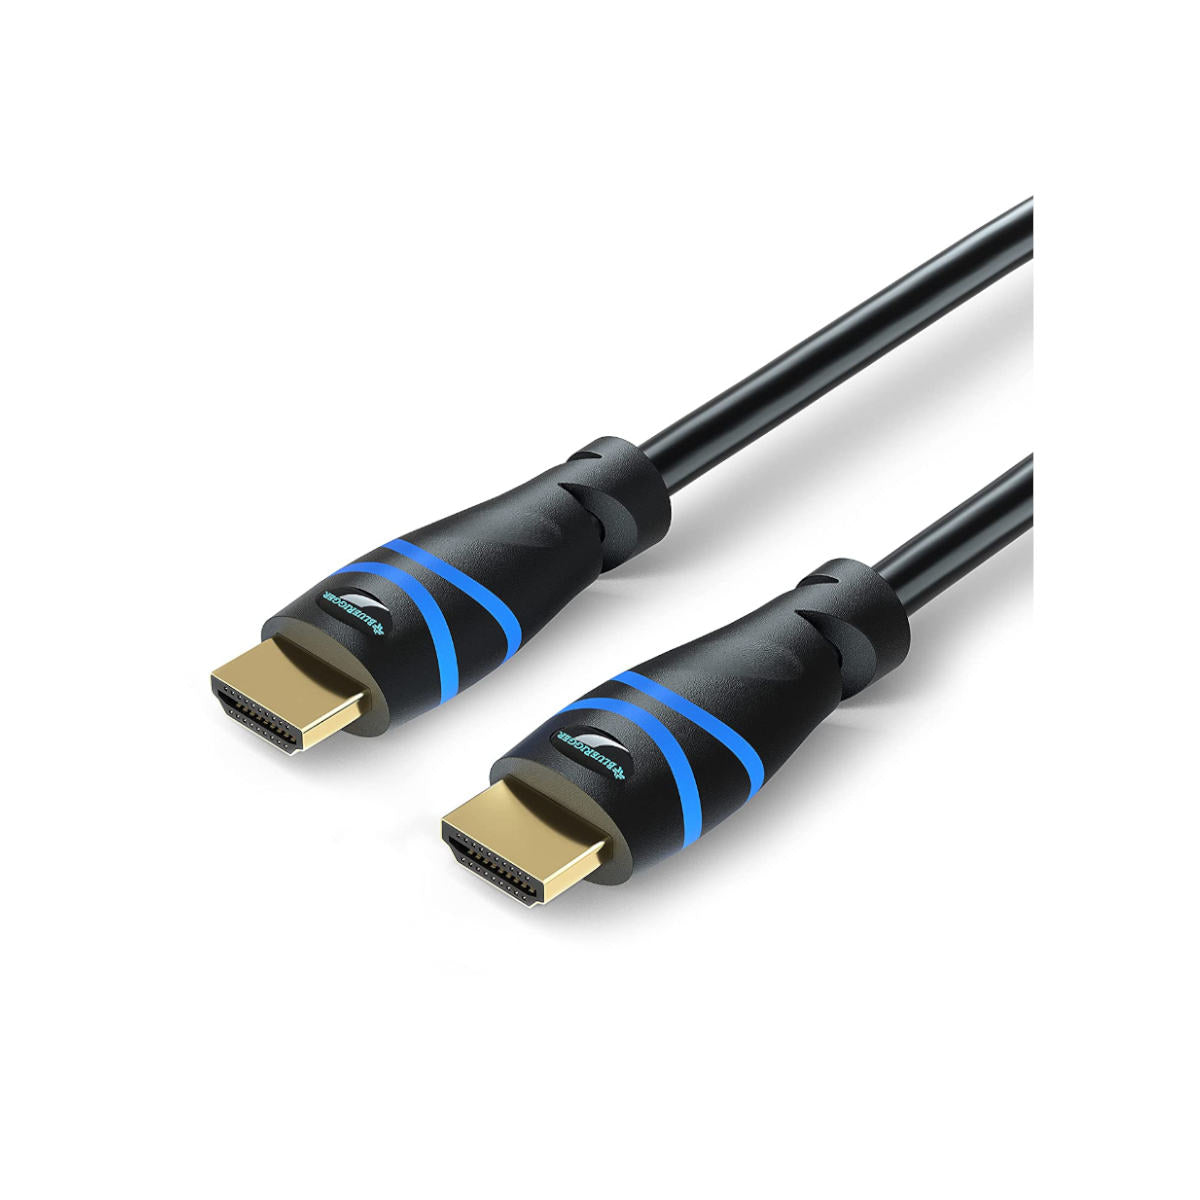 BlueRigger CAT8 Flat Ethernet Cable - 35FT (40Gbps, 2000MHz, RJ45) CAT –  Bluerigger